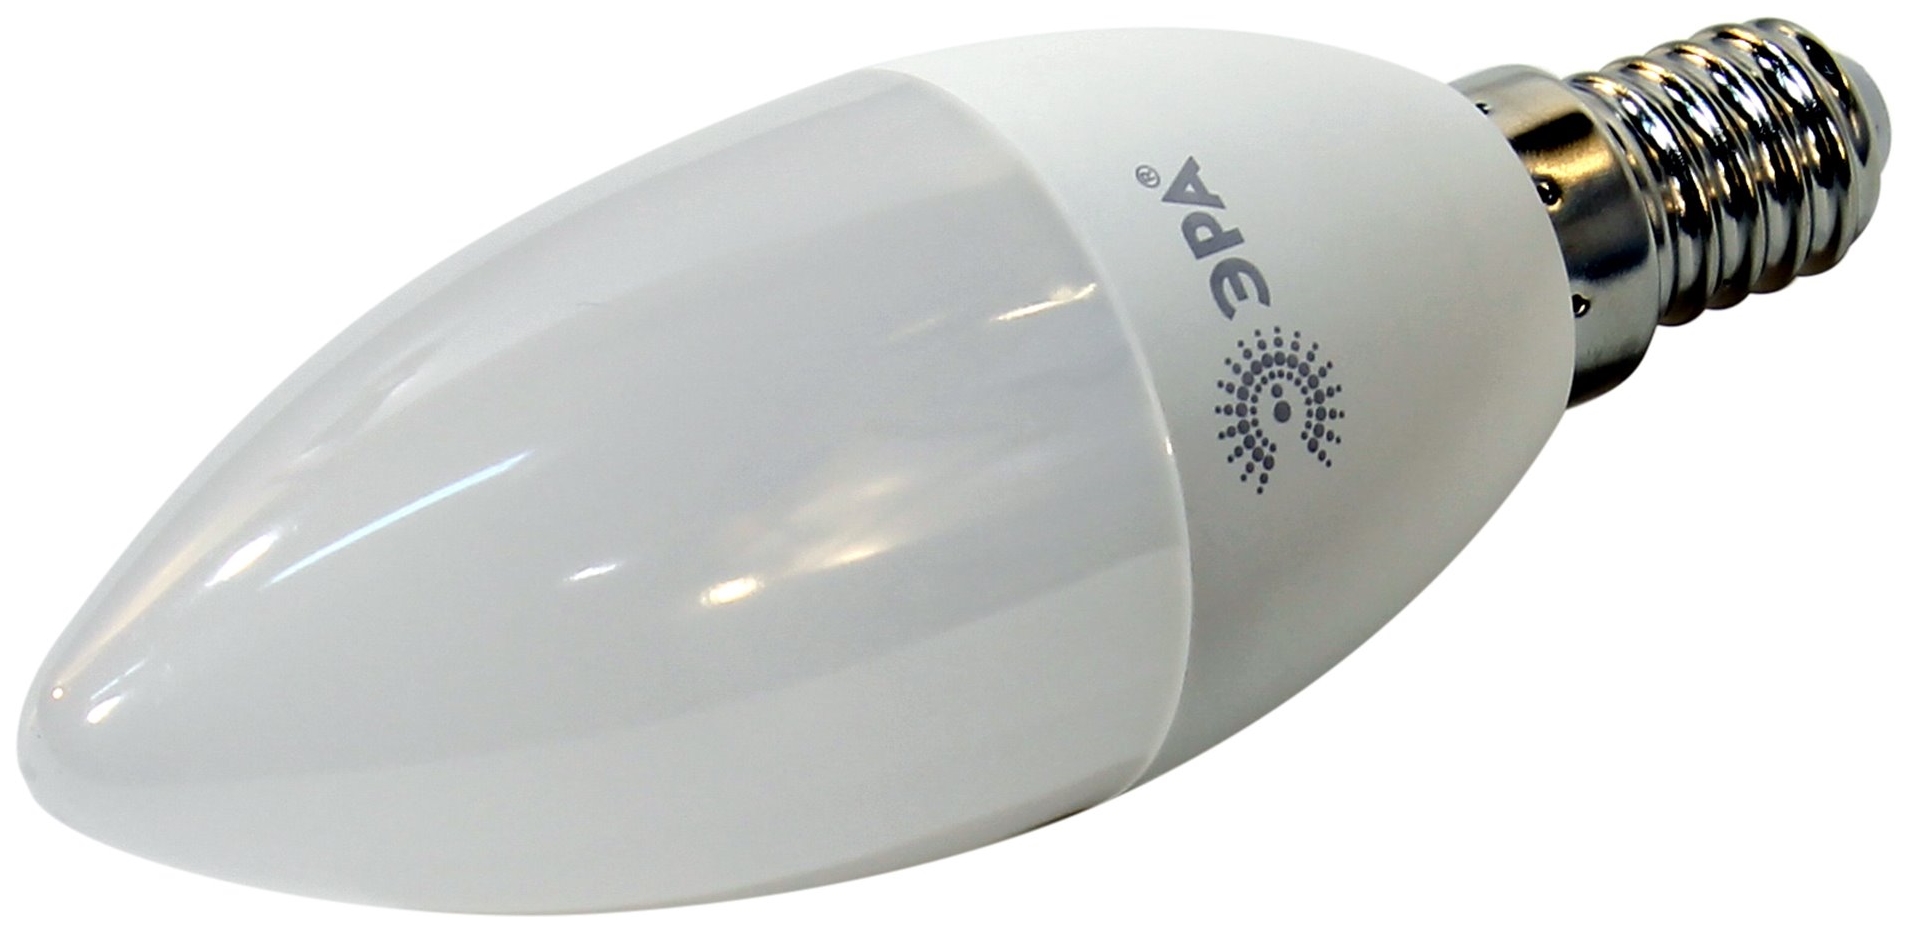 Лампа LED ЭРА B35-7w-840-E14